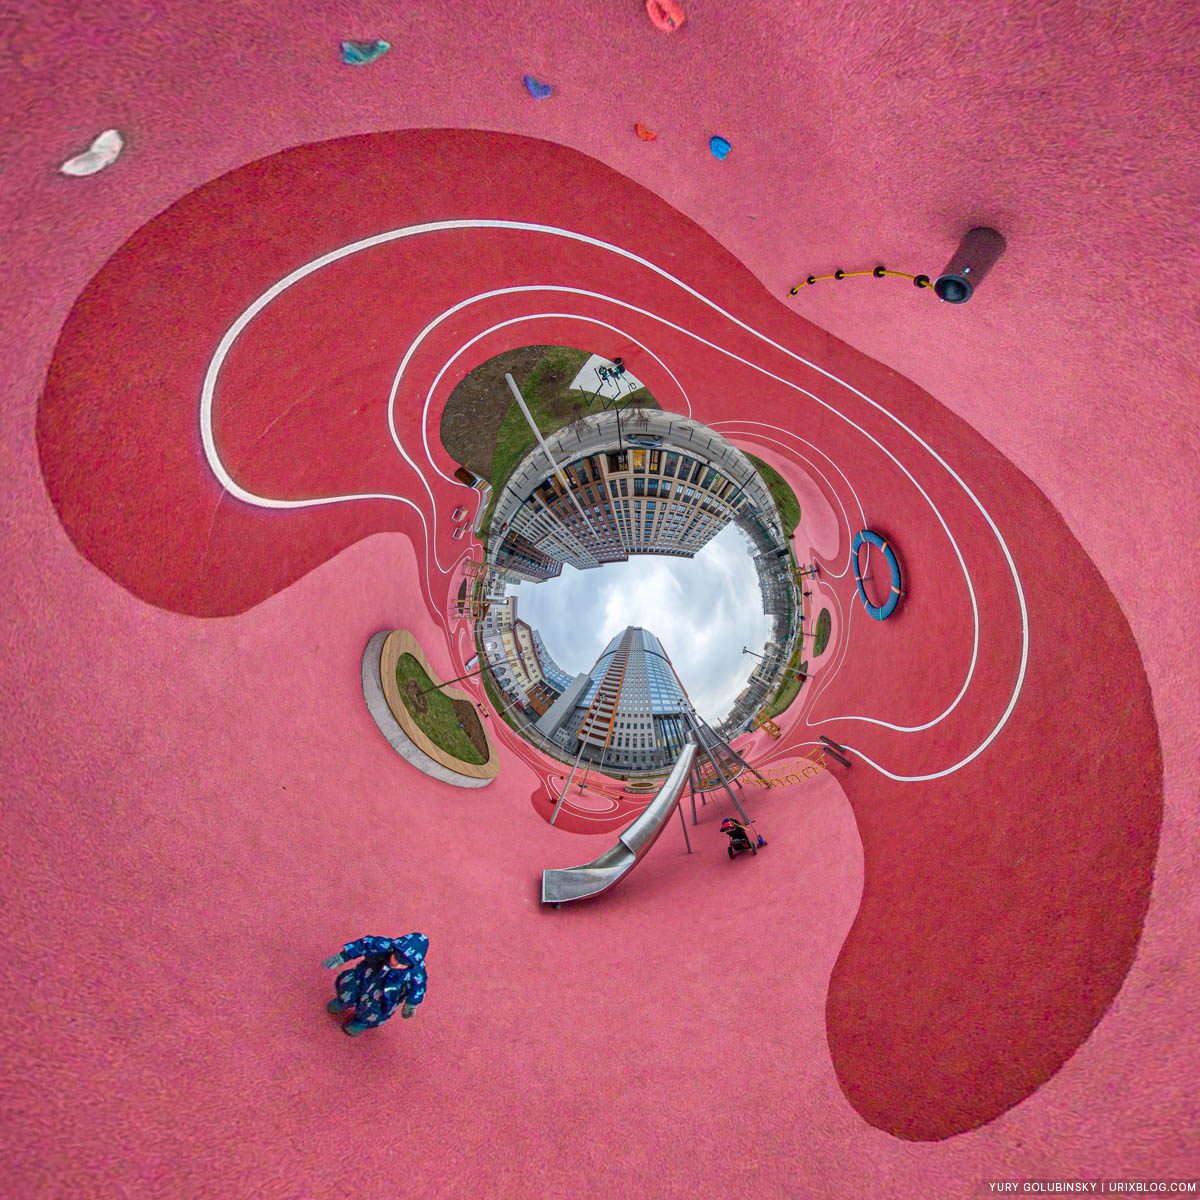 Детская площадка, ЖК Царская Площадь, маленькая планета, панорама, Москва, Россия, 2020